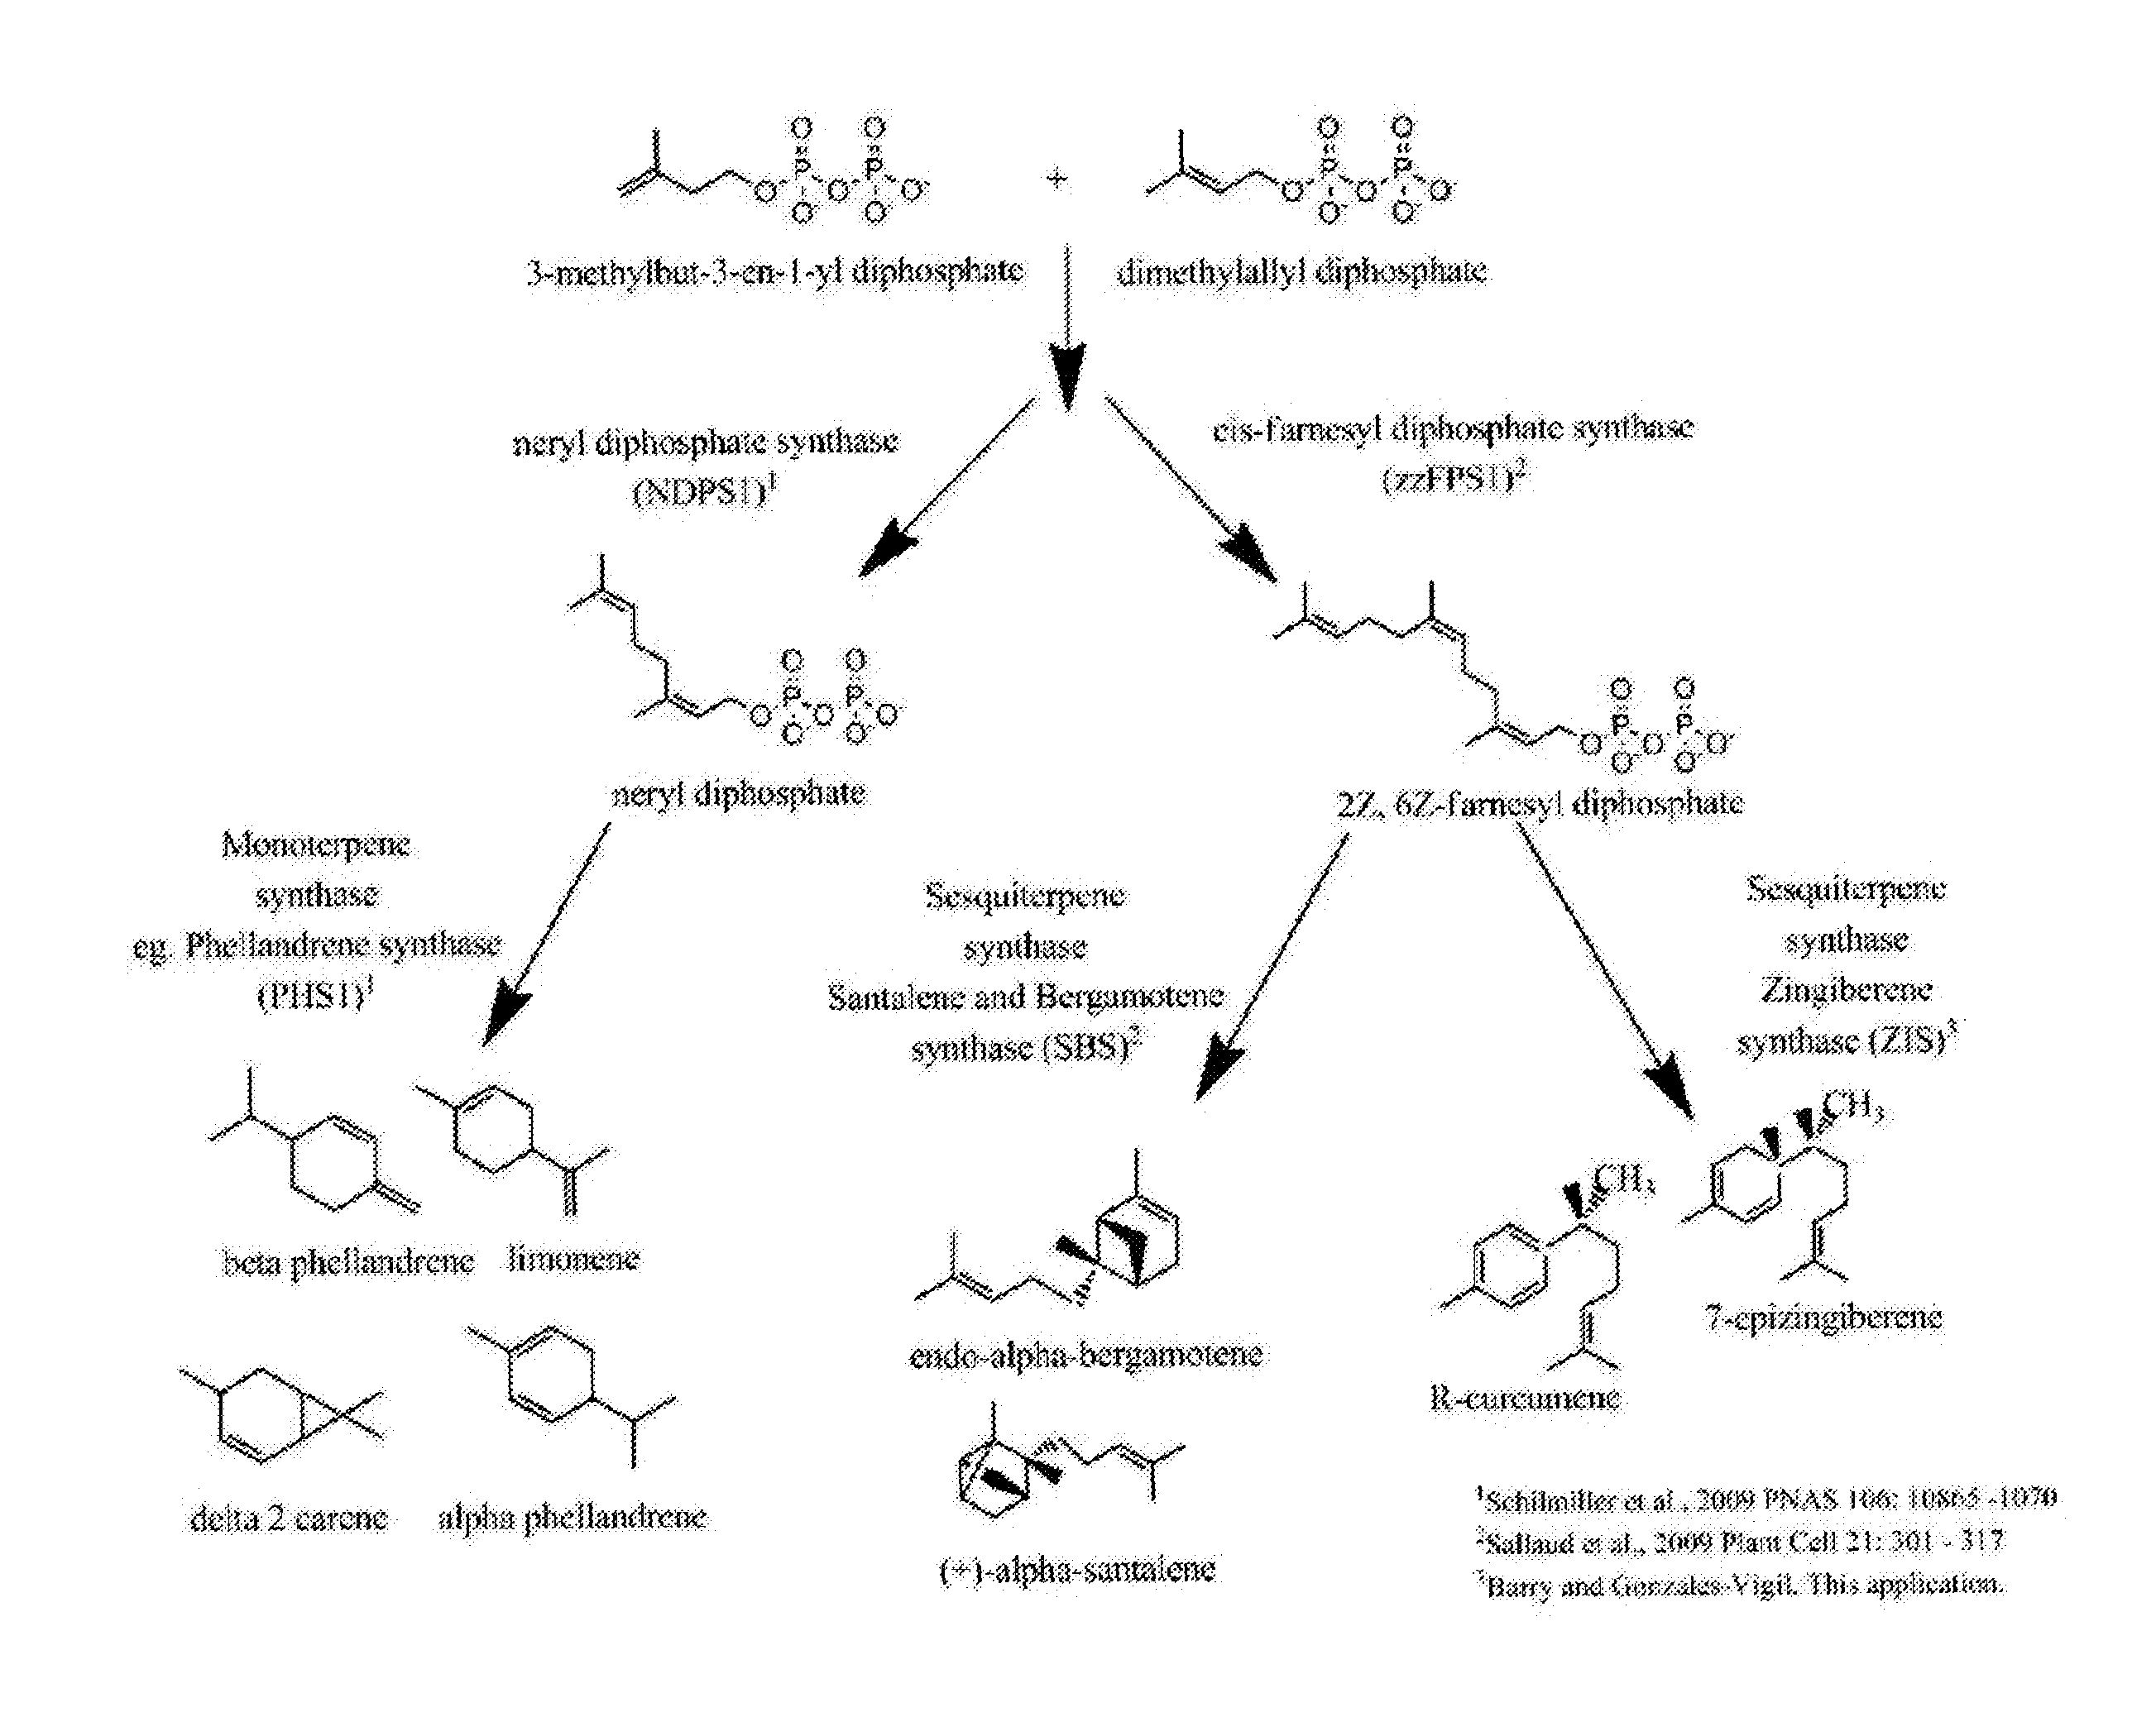 Enzymes that synthesize zingiberene